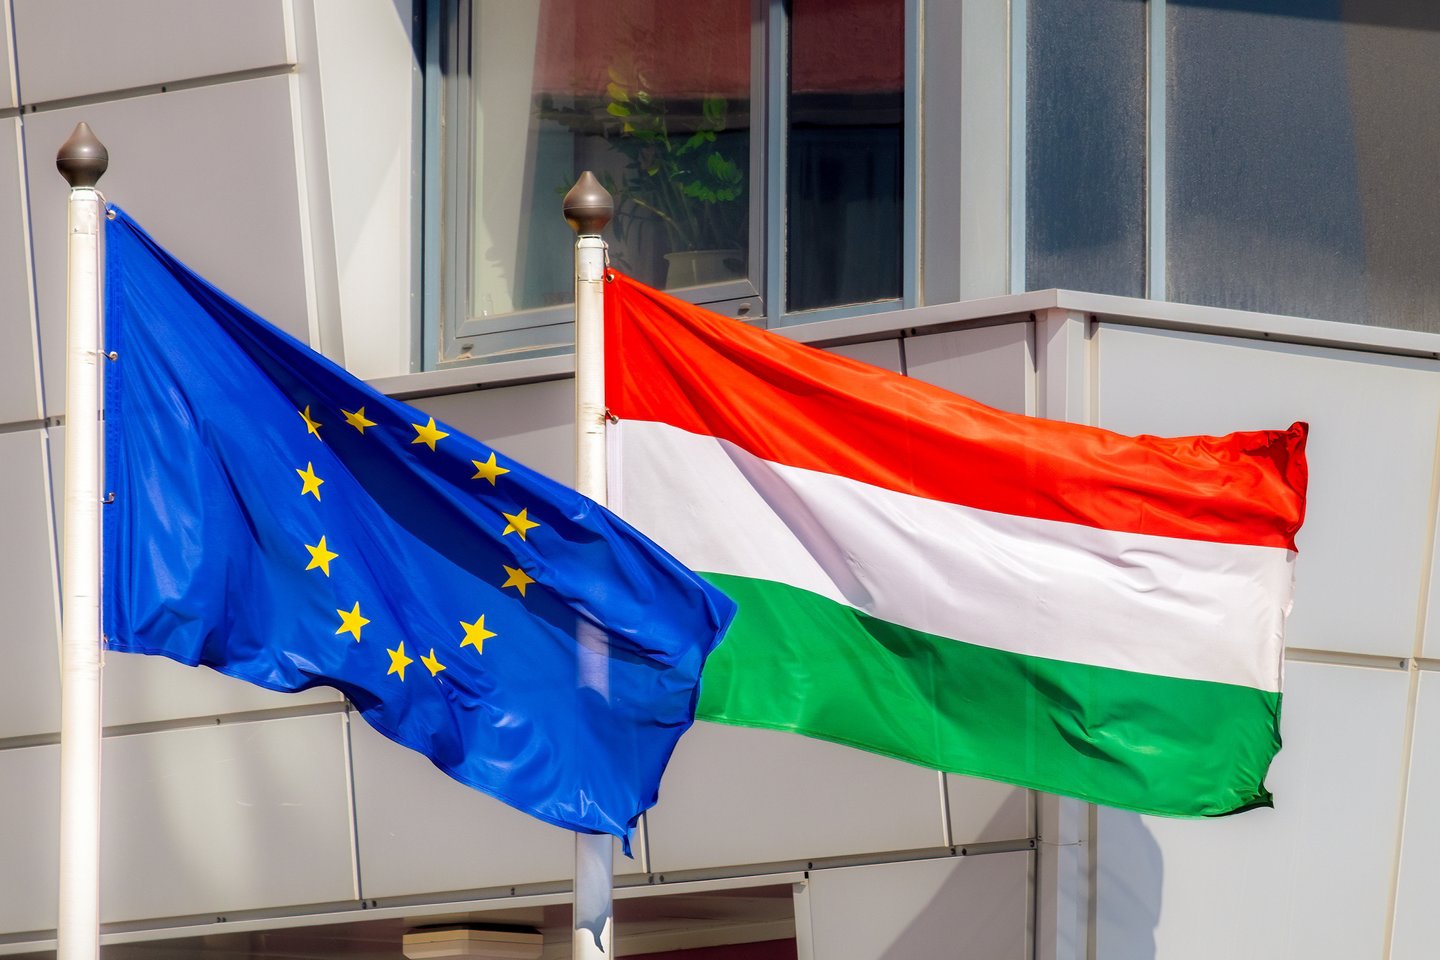  ES ir Vengrijos vėliavos.<br>123rf.com nuotr.